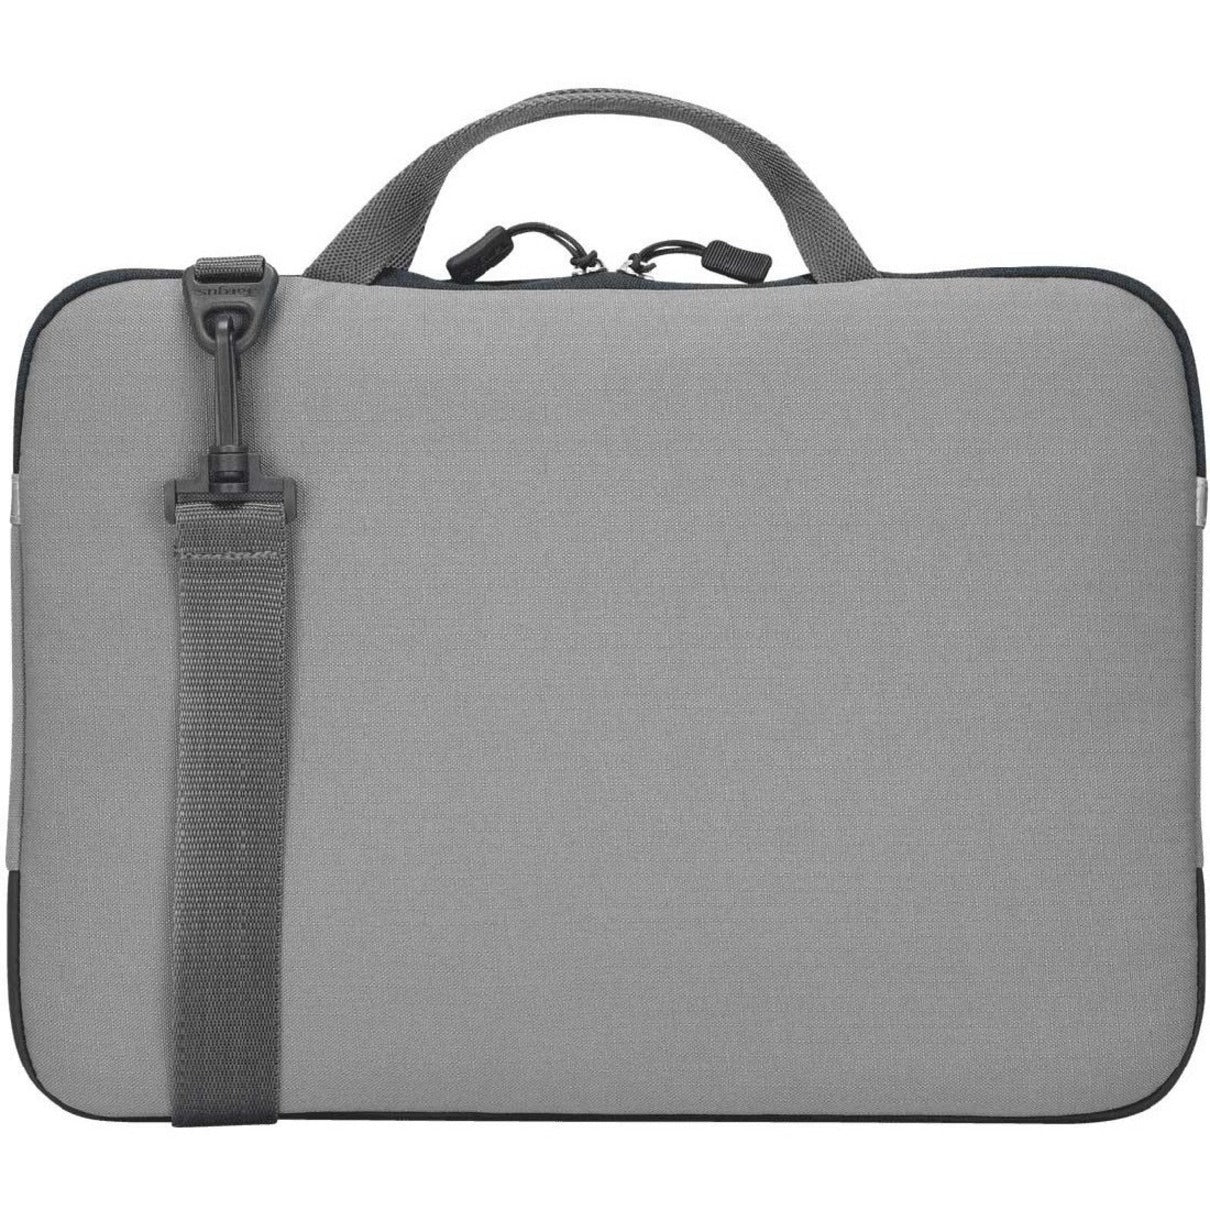 Targus Bex II TSS92204 Carrying Case (Slipcase) for 13.3" Notebook - Gray